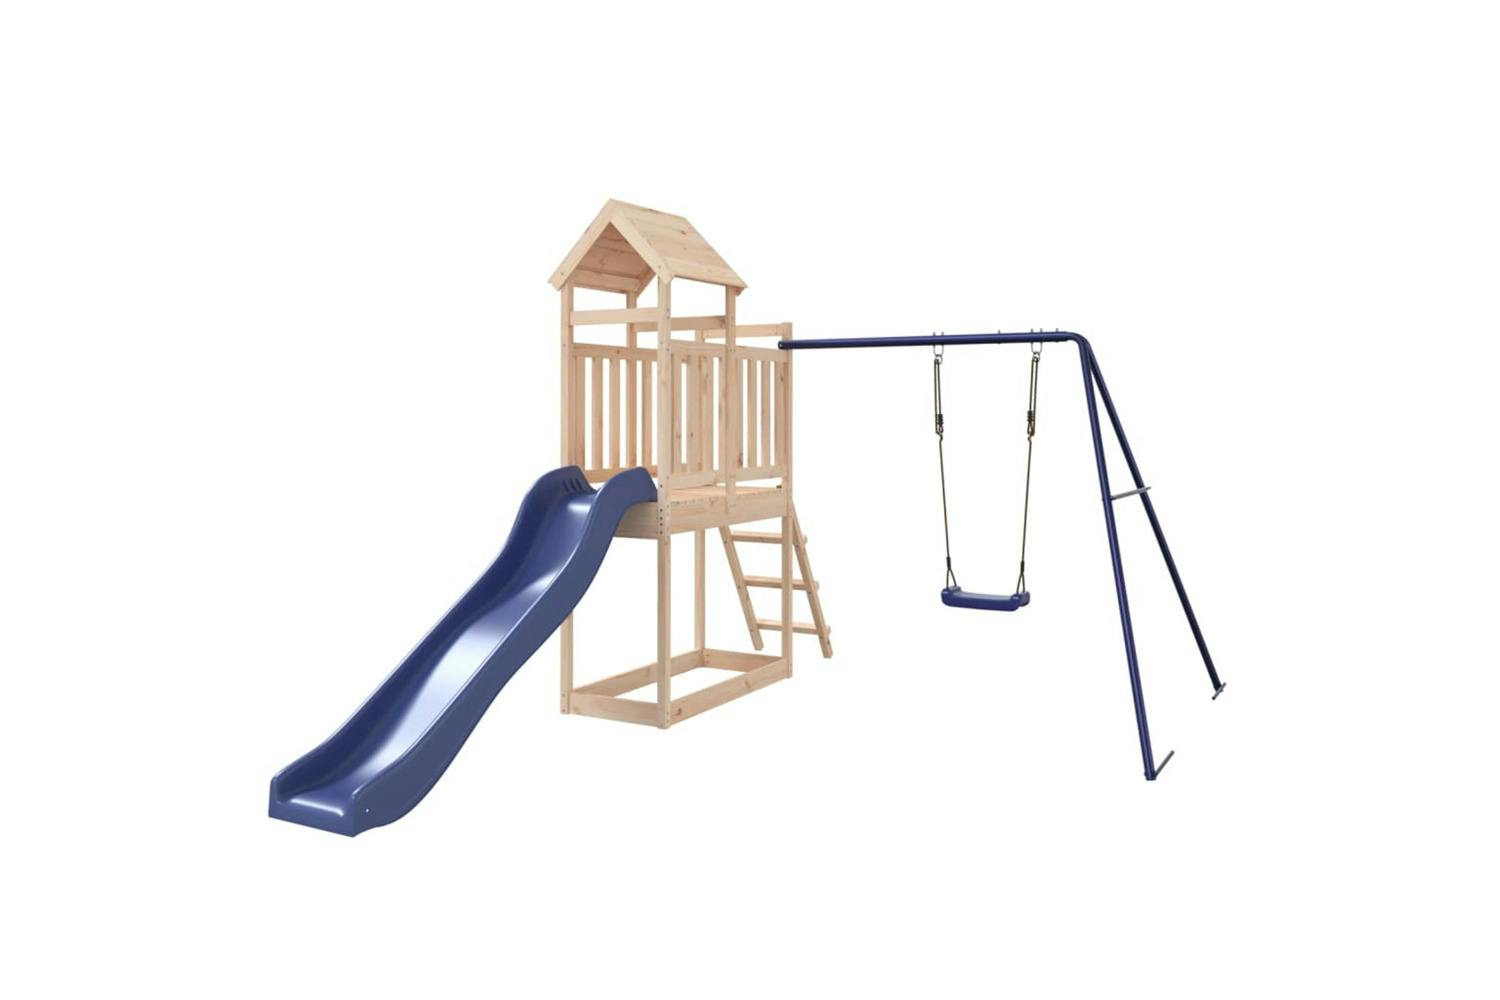 Vidaxl 3155876 Playhouse With Slide Swing Solid Wood Pine